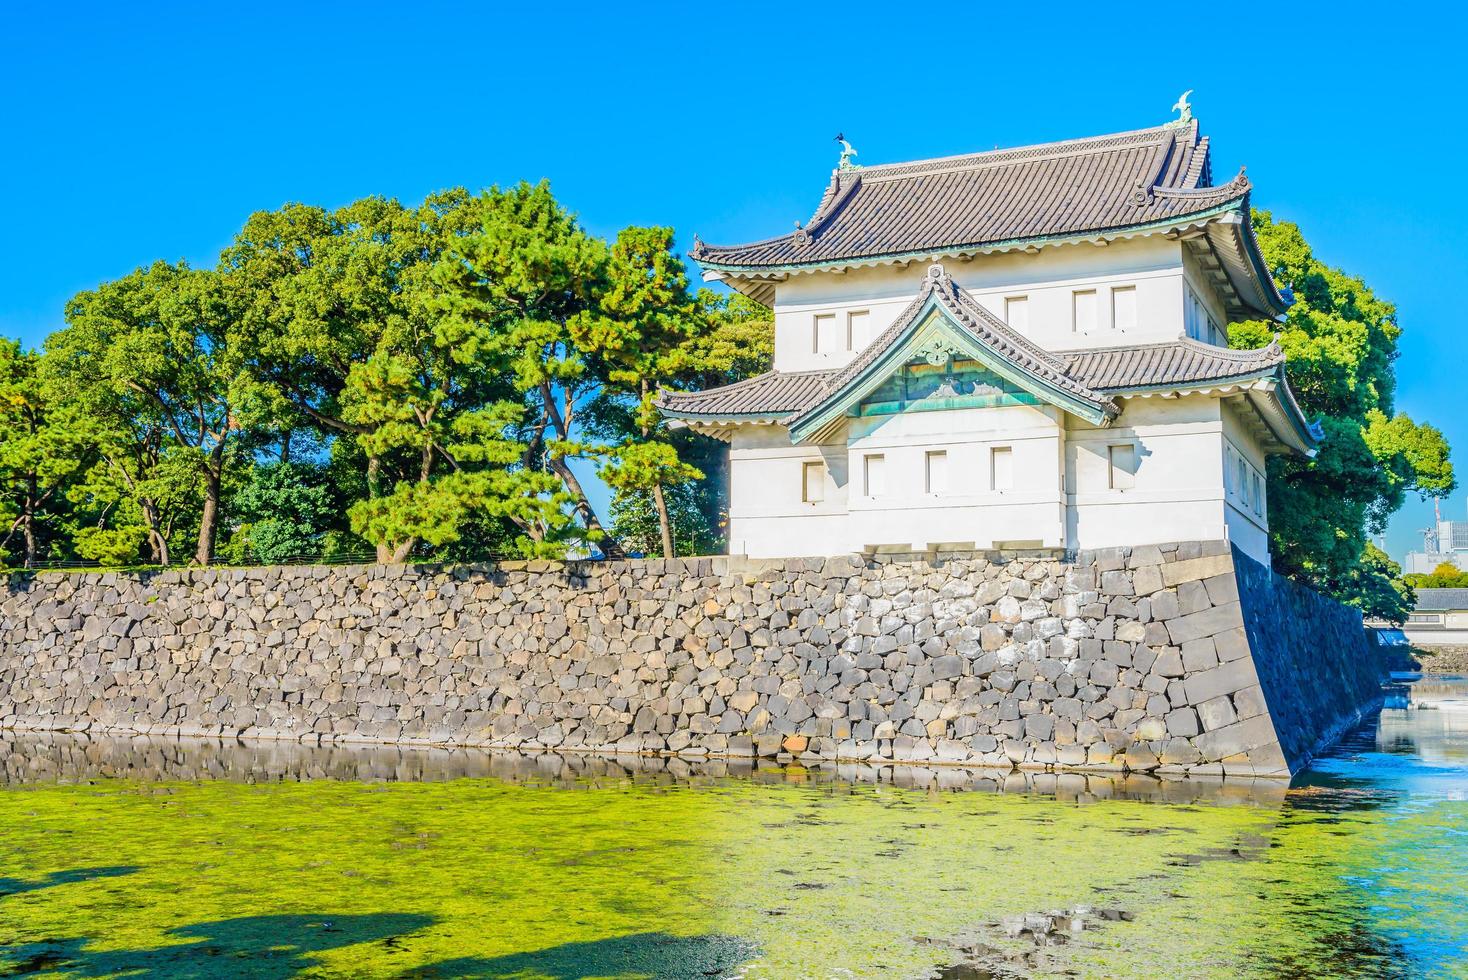 kejserliga palatset i tokyo, japan foto